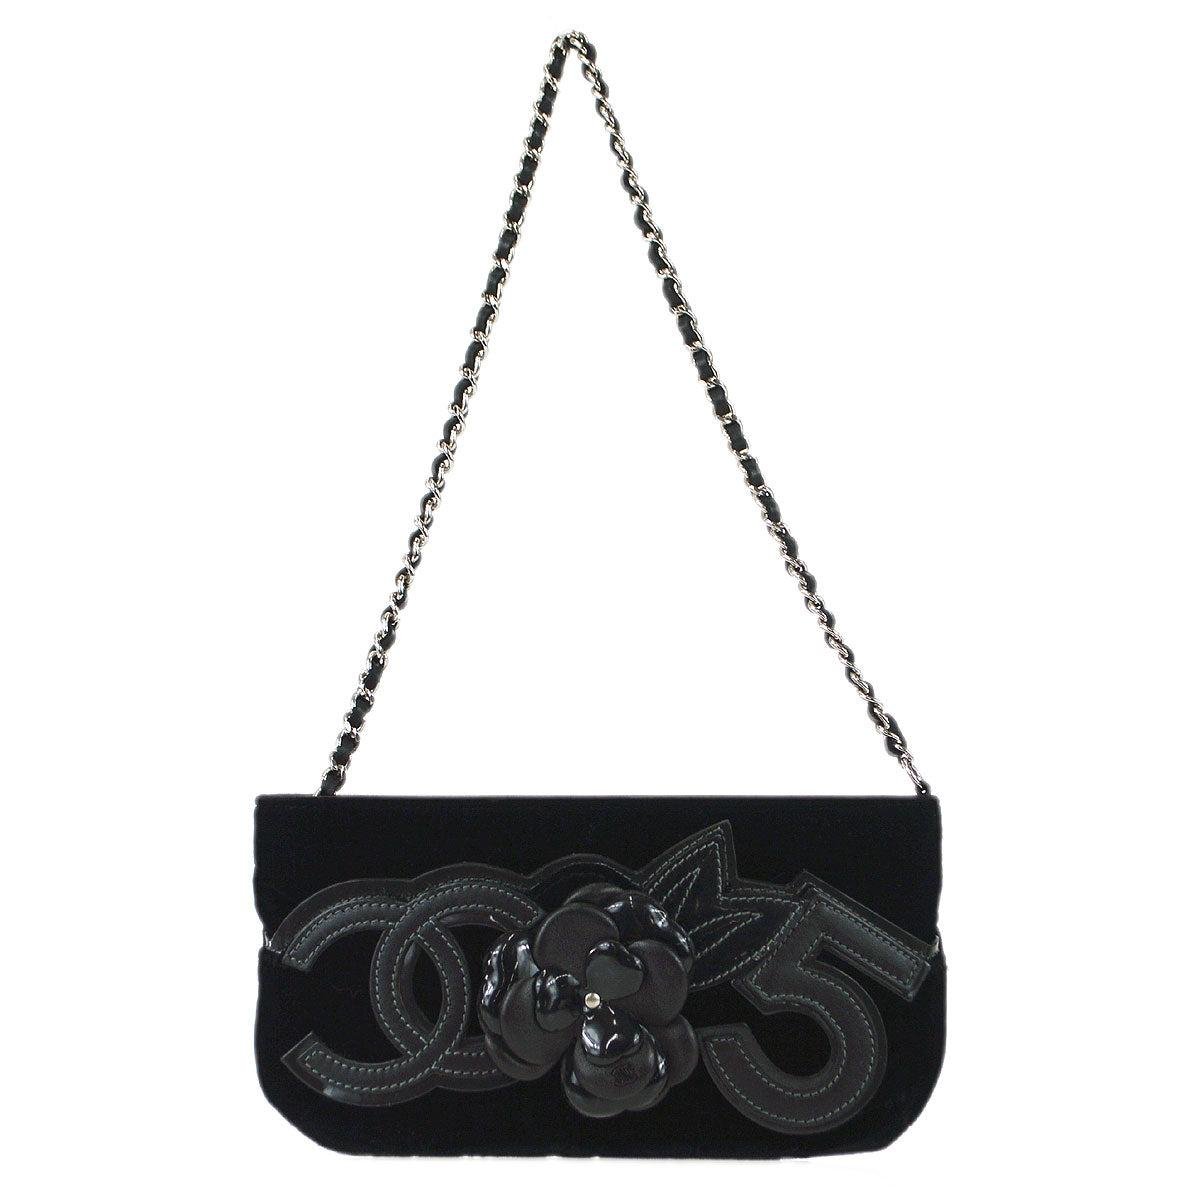 Chanel 2005-2006 Camellia Handbag Black Velvet